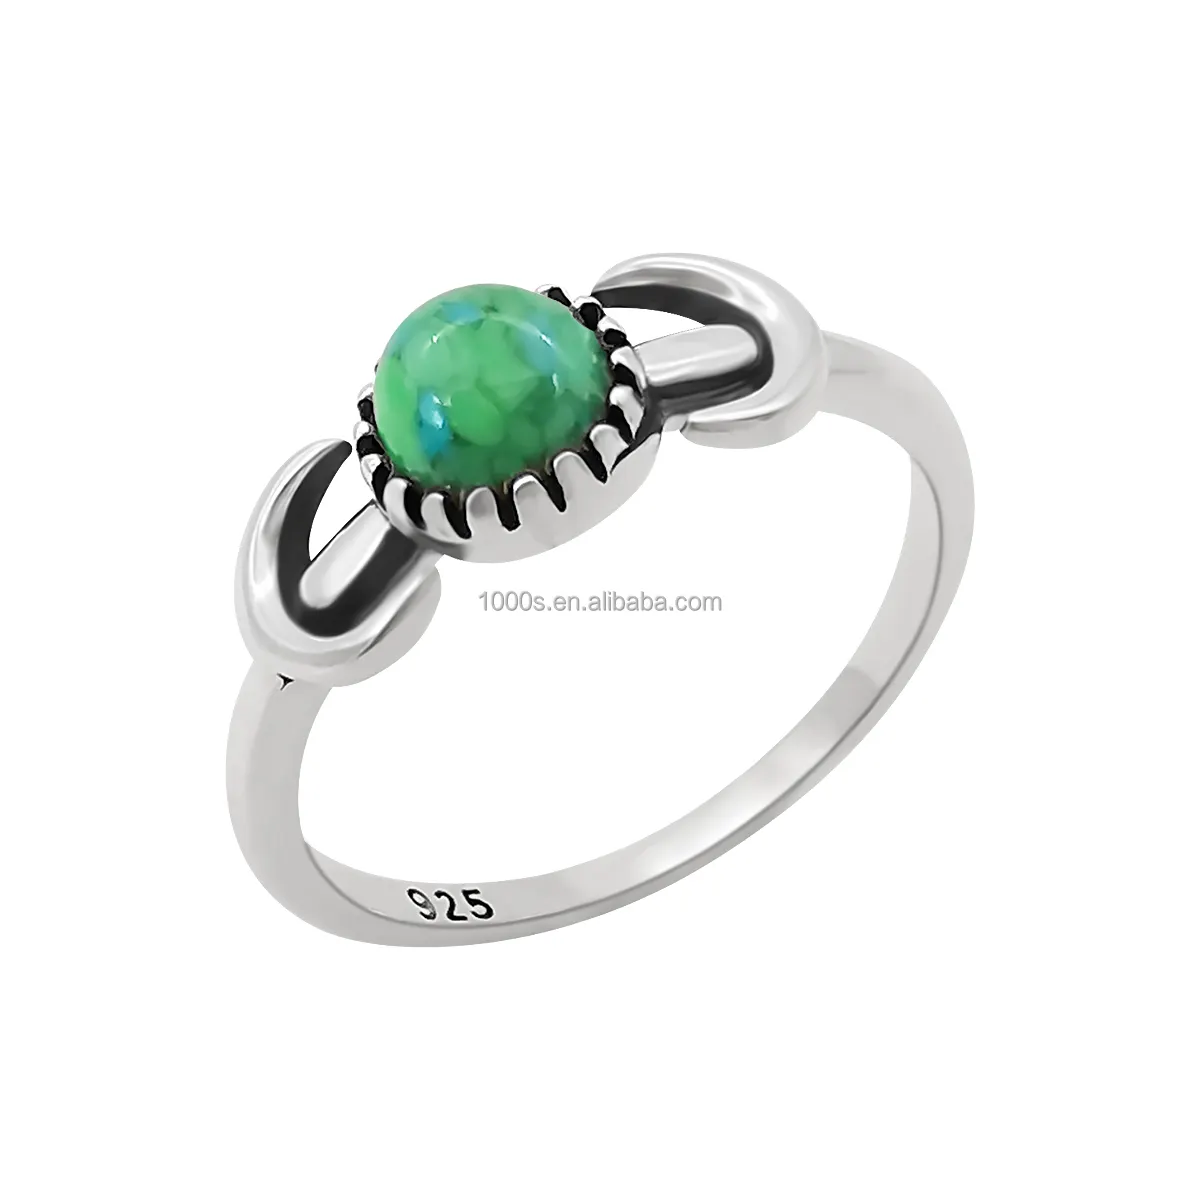 Ingrosso anello in argento Sterling S925 Design classico per le donne con gioielli in pietra turchese